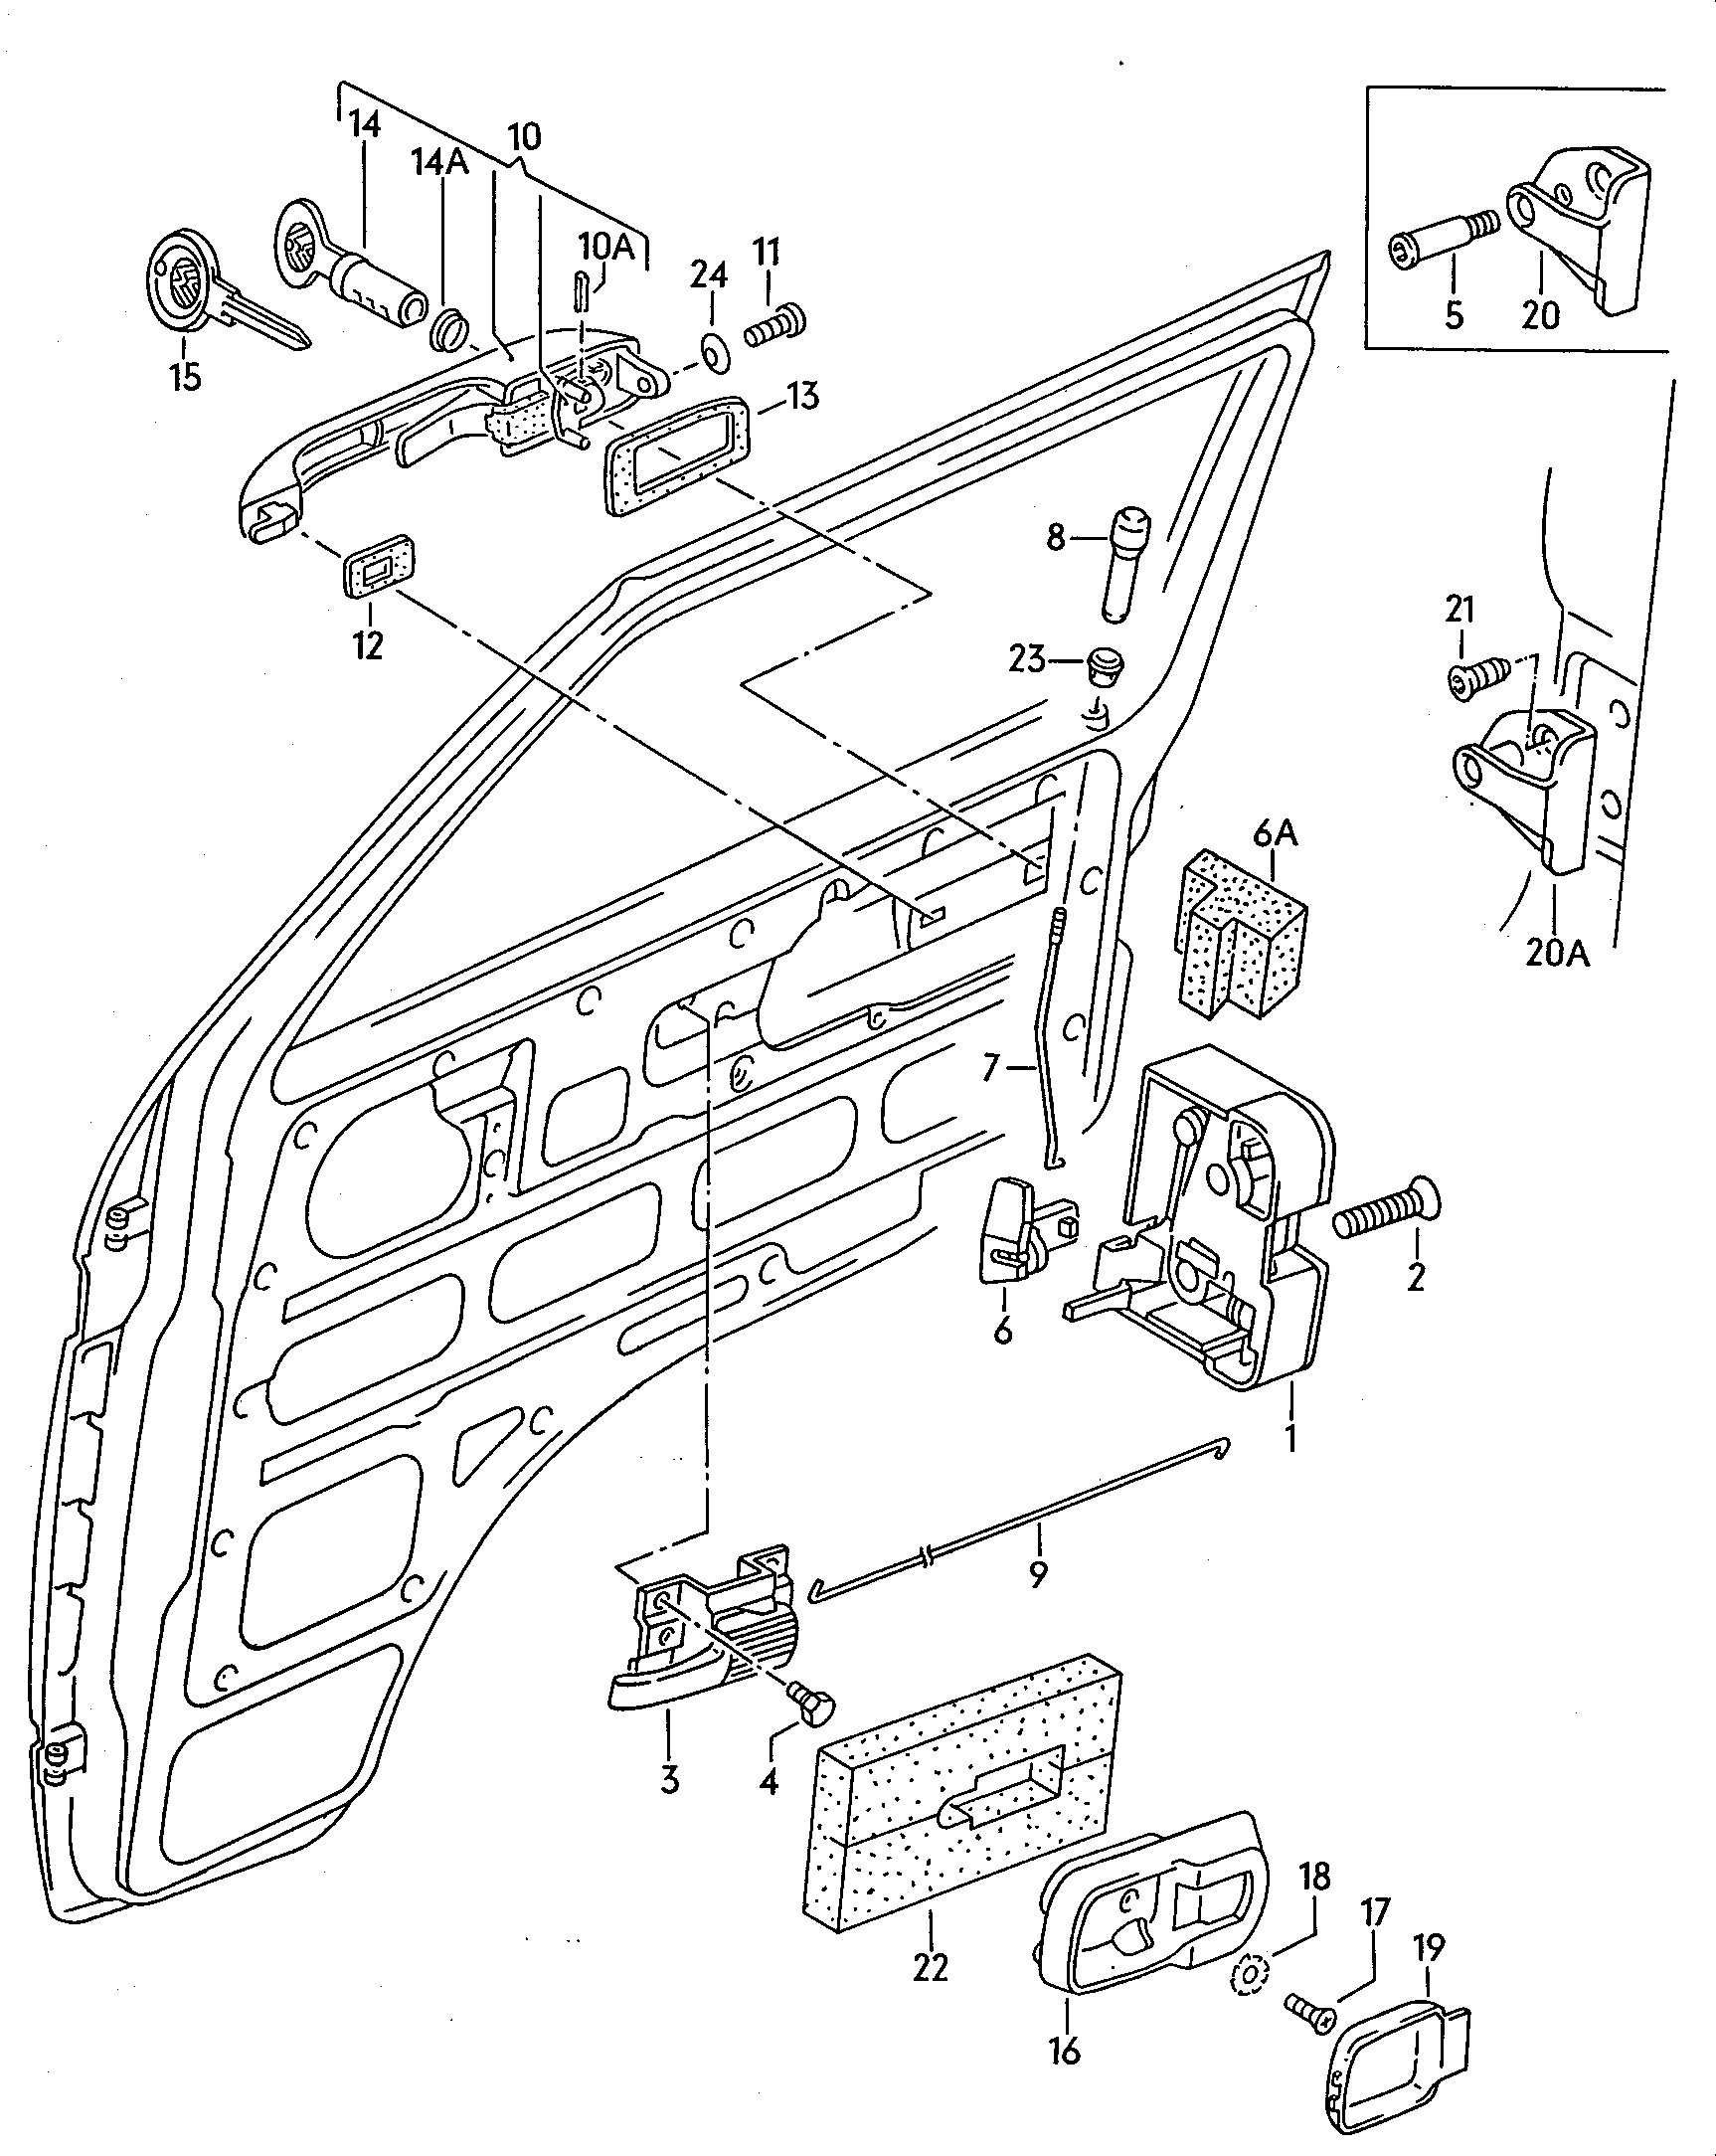 Zamek drzwiklamka wewnetrznaklamka zewnetrzna przod - Typ 2/syncro - t2